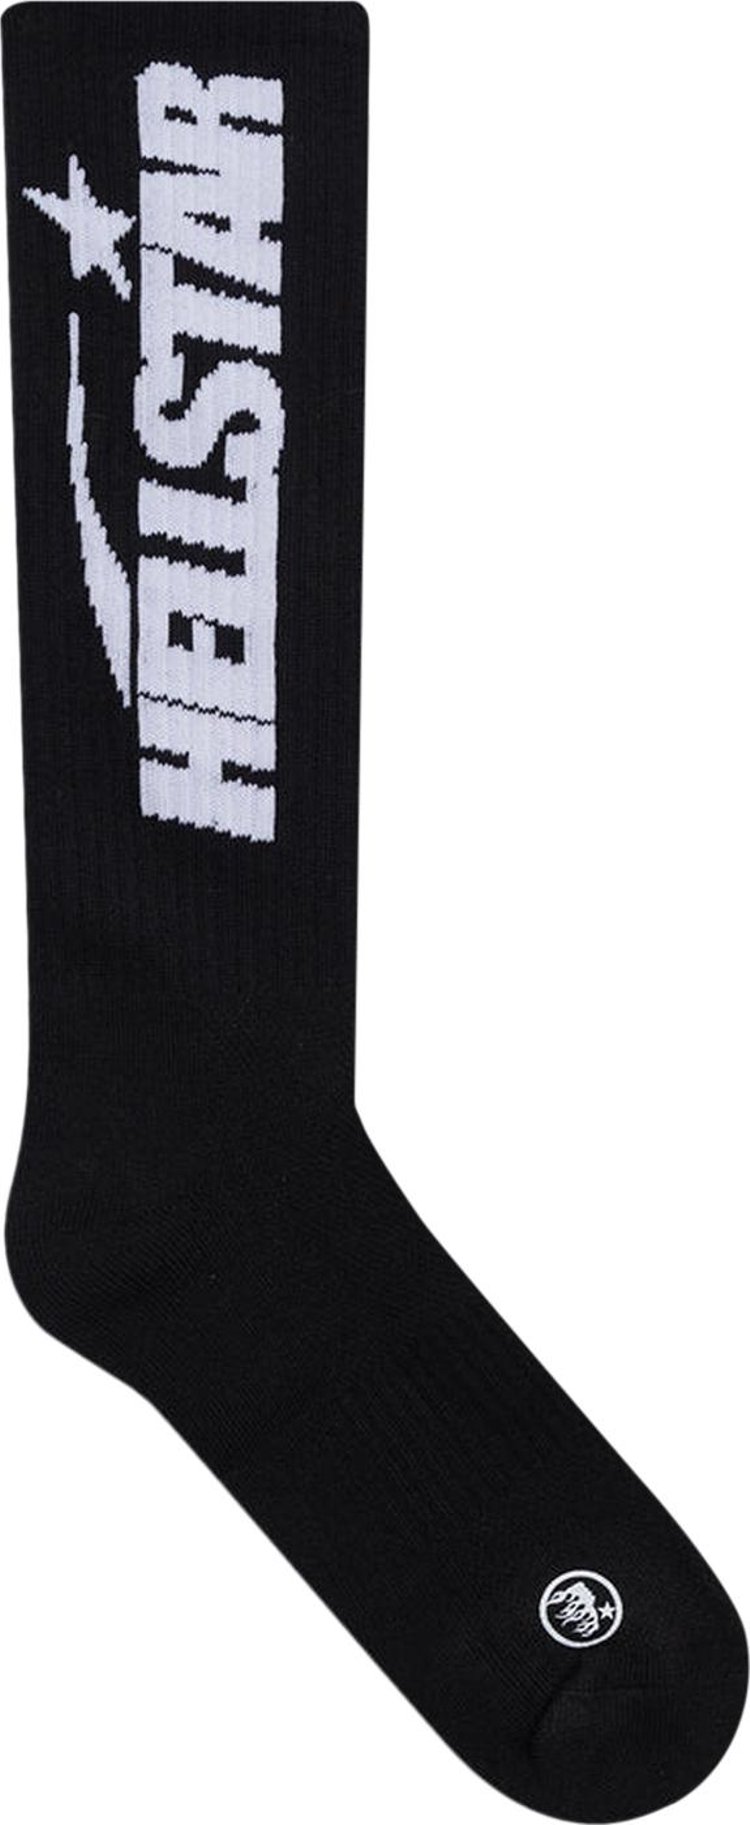 Hellstar Classic Socks (2 Pack) 'Black/White'